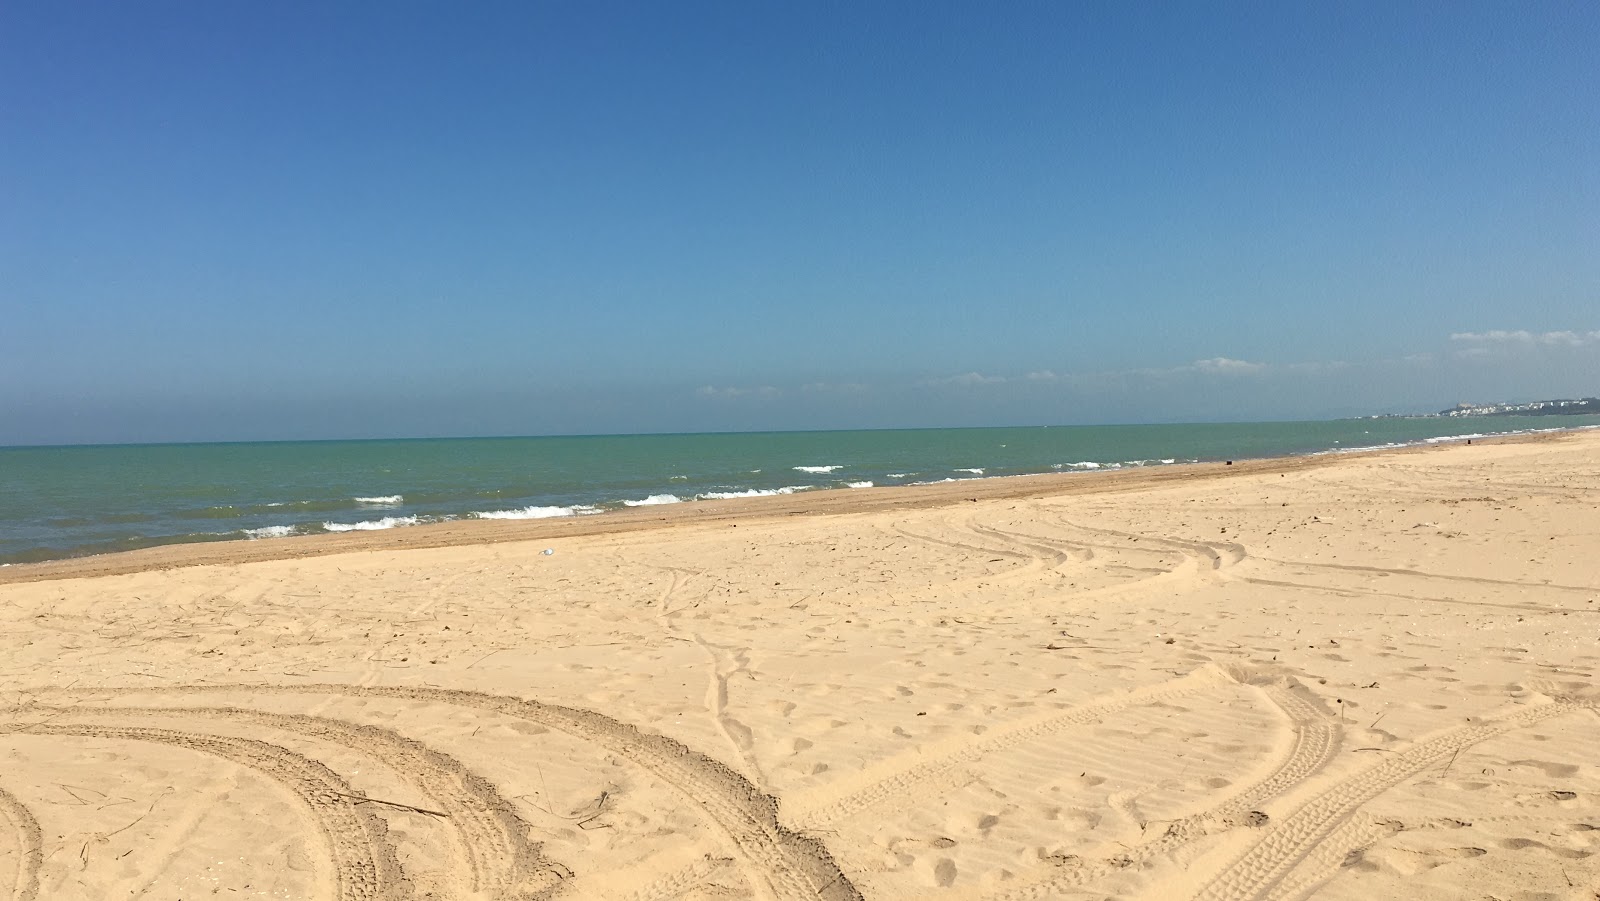 Raoued plage的照片 带有明亮的细沙表面